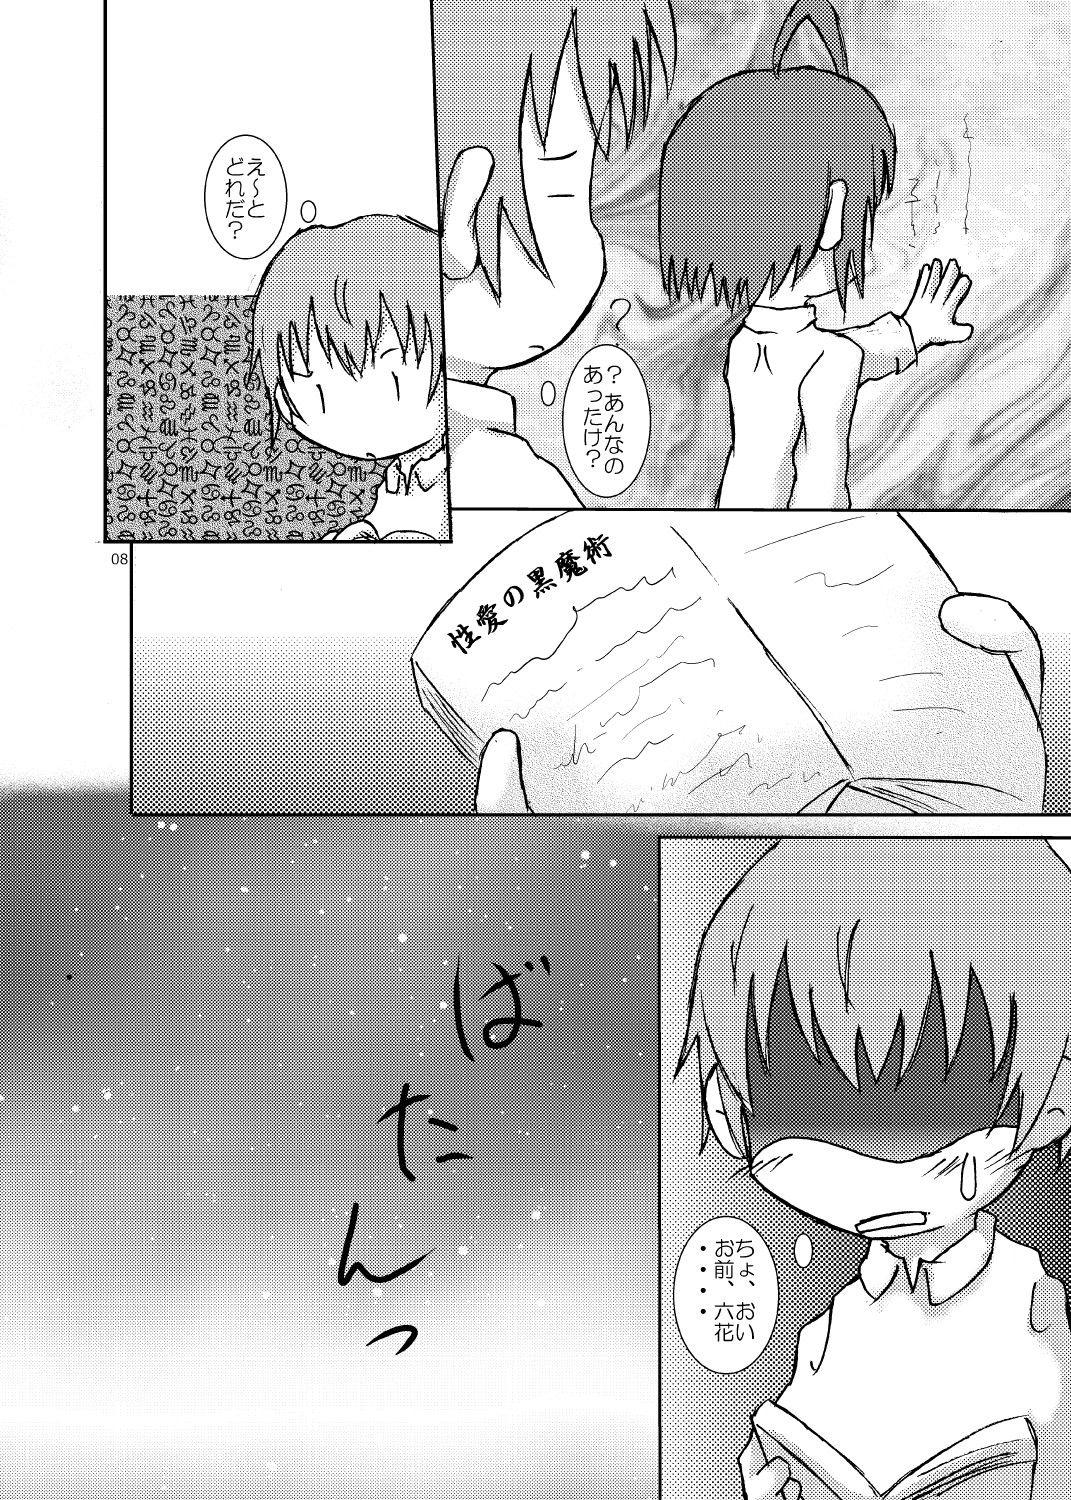 Fantasy Massage 中二病バカップル読本 - Chuunibyou demo koi ga shitai Tinder - Page 7